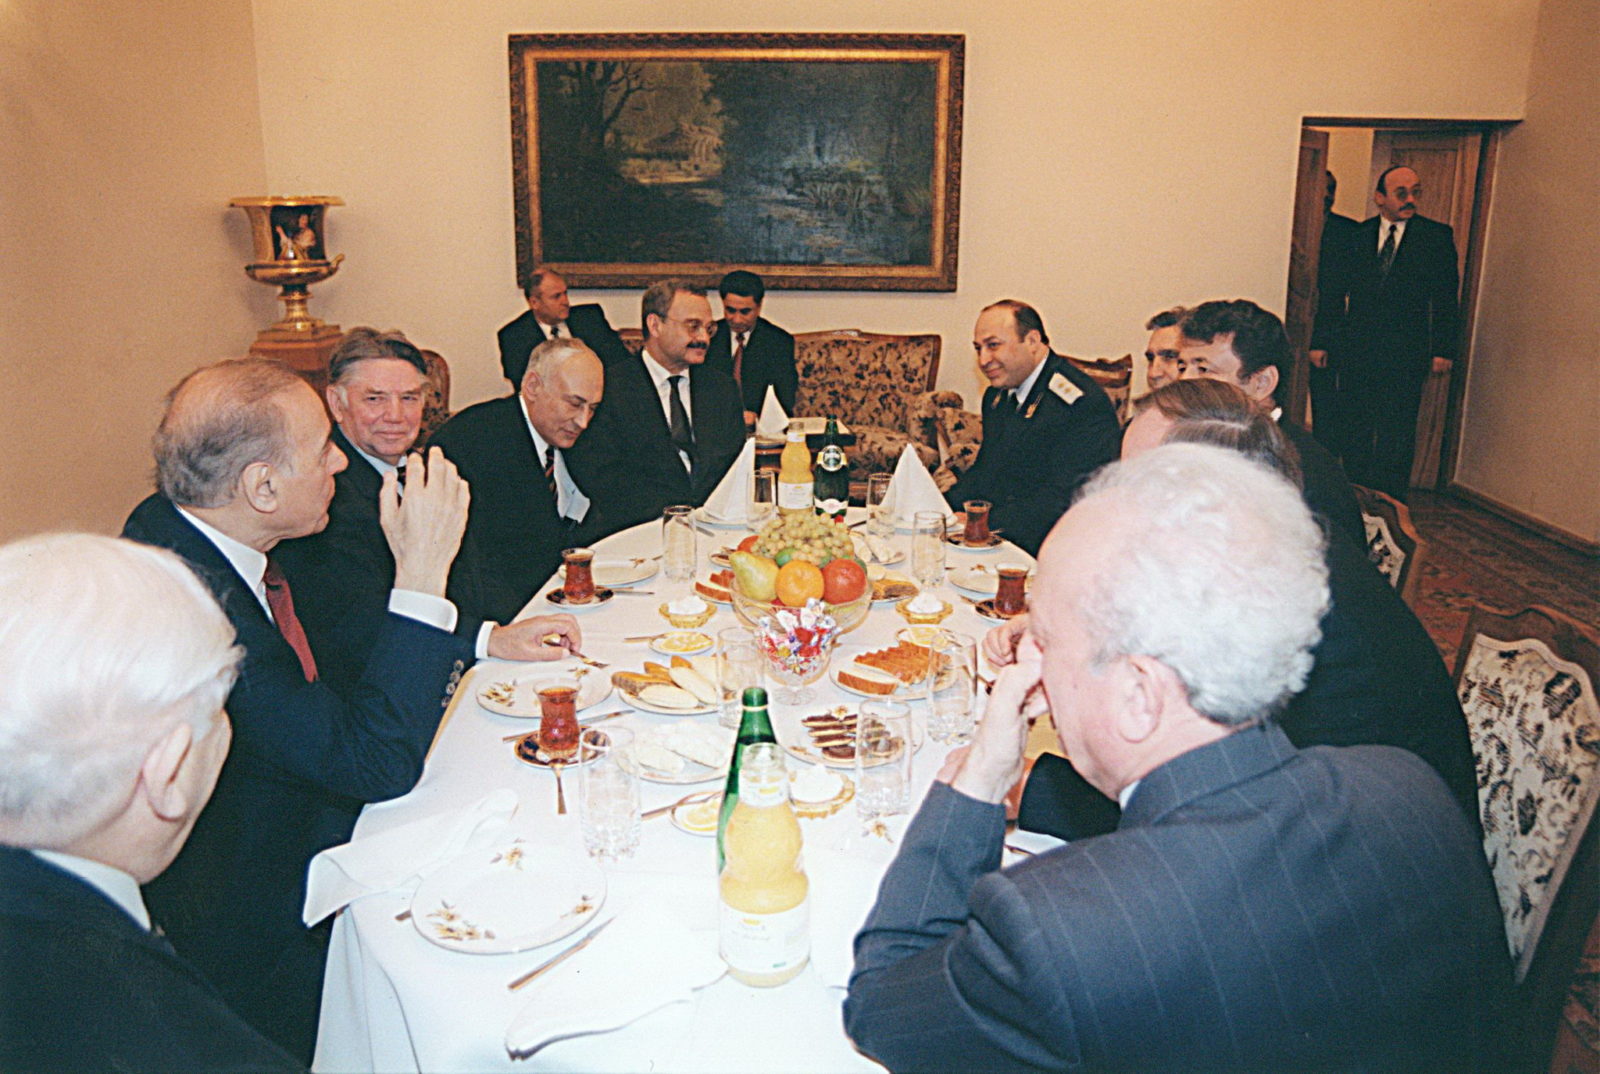 Встреча старых друзей с хлебом и солью: Гейдар Алиев, Александр Сухарев и другие